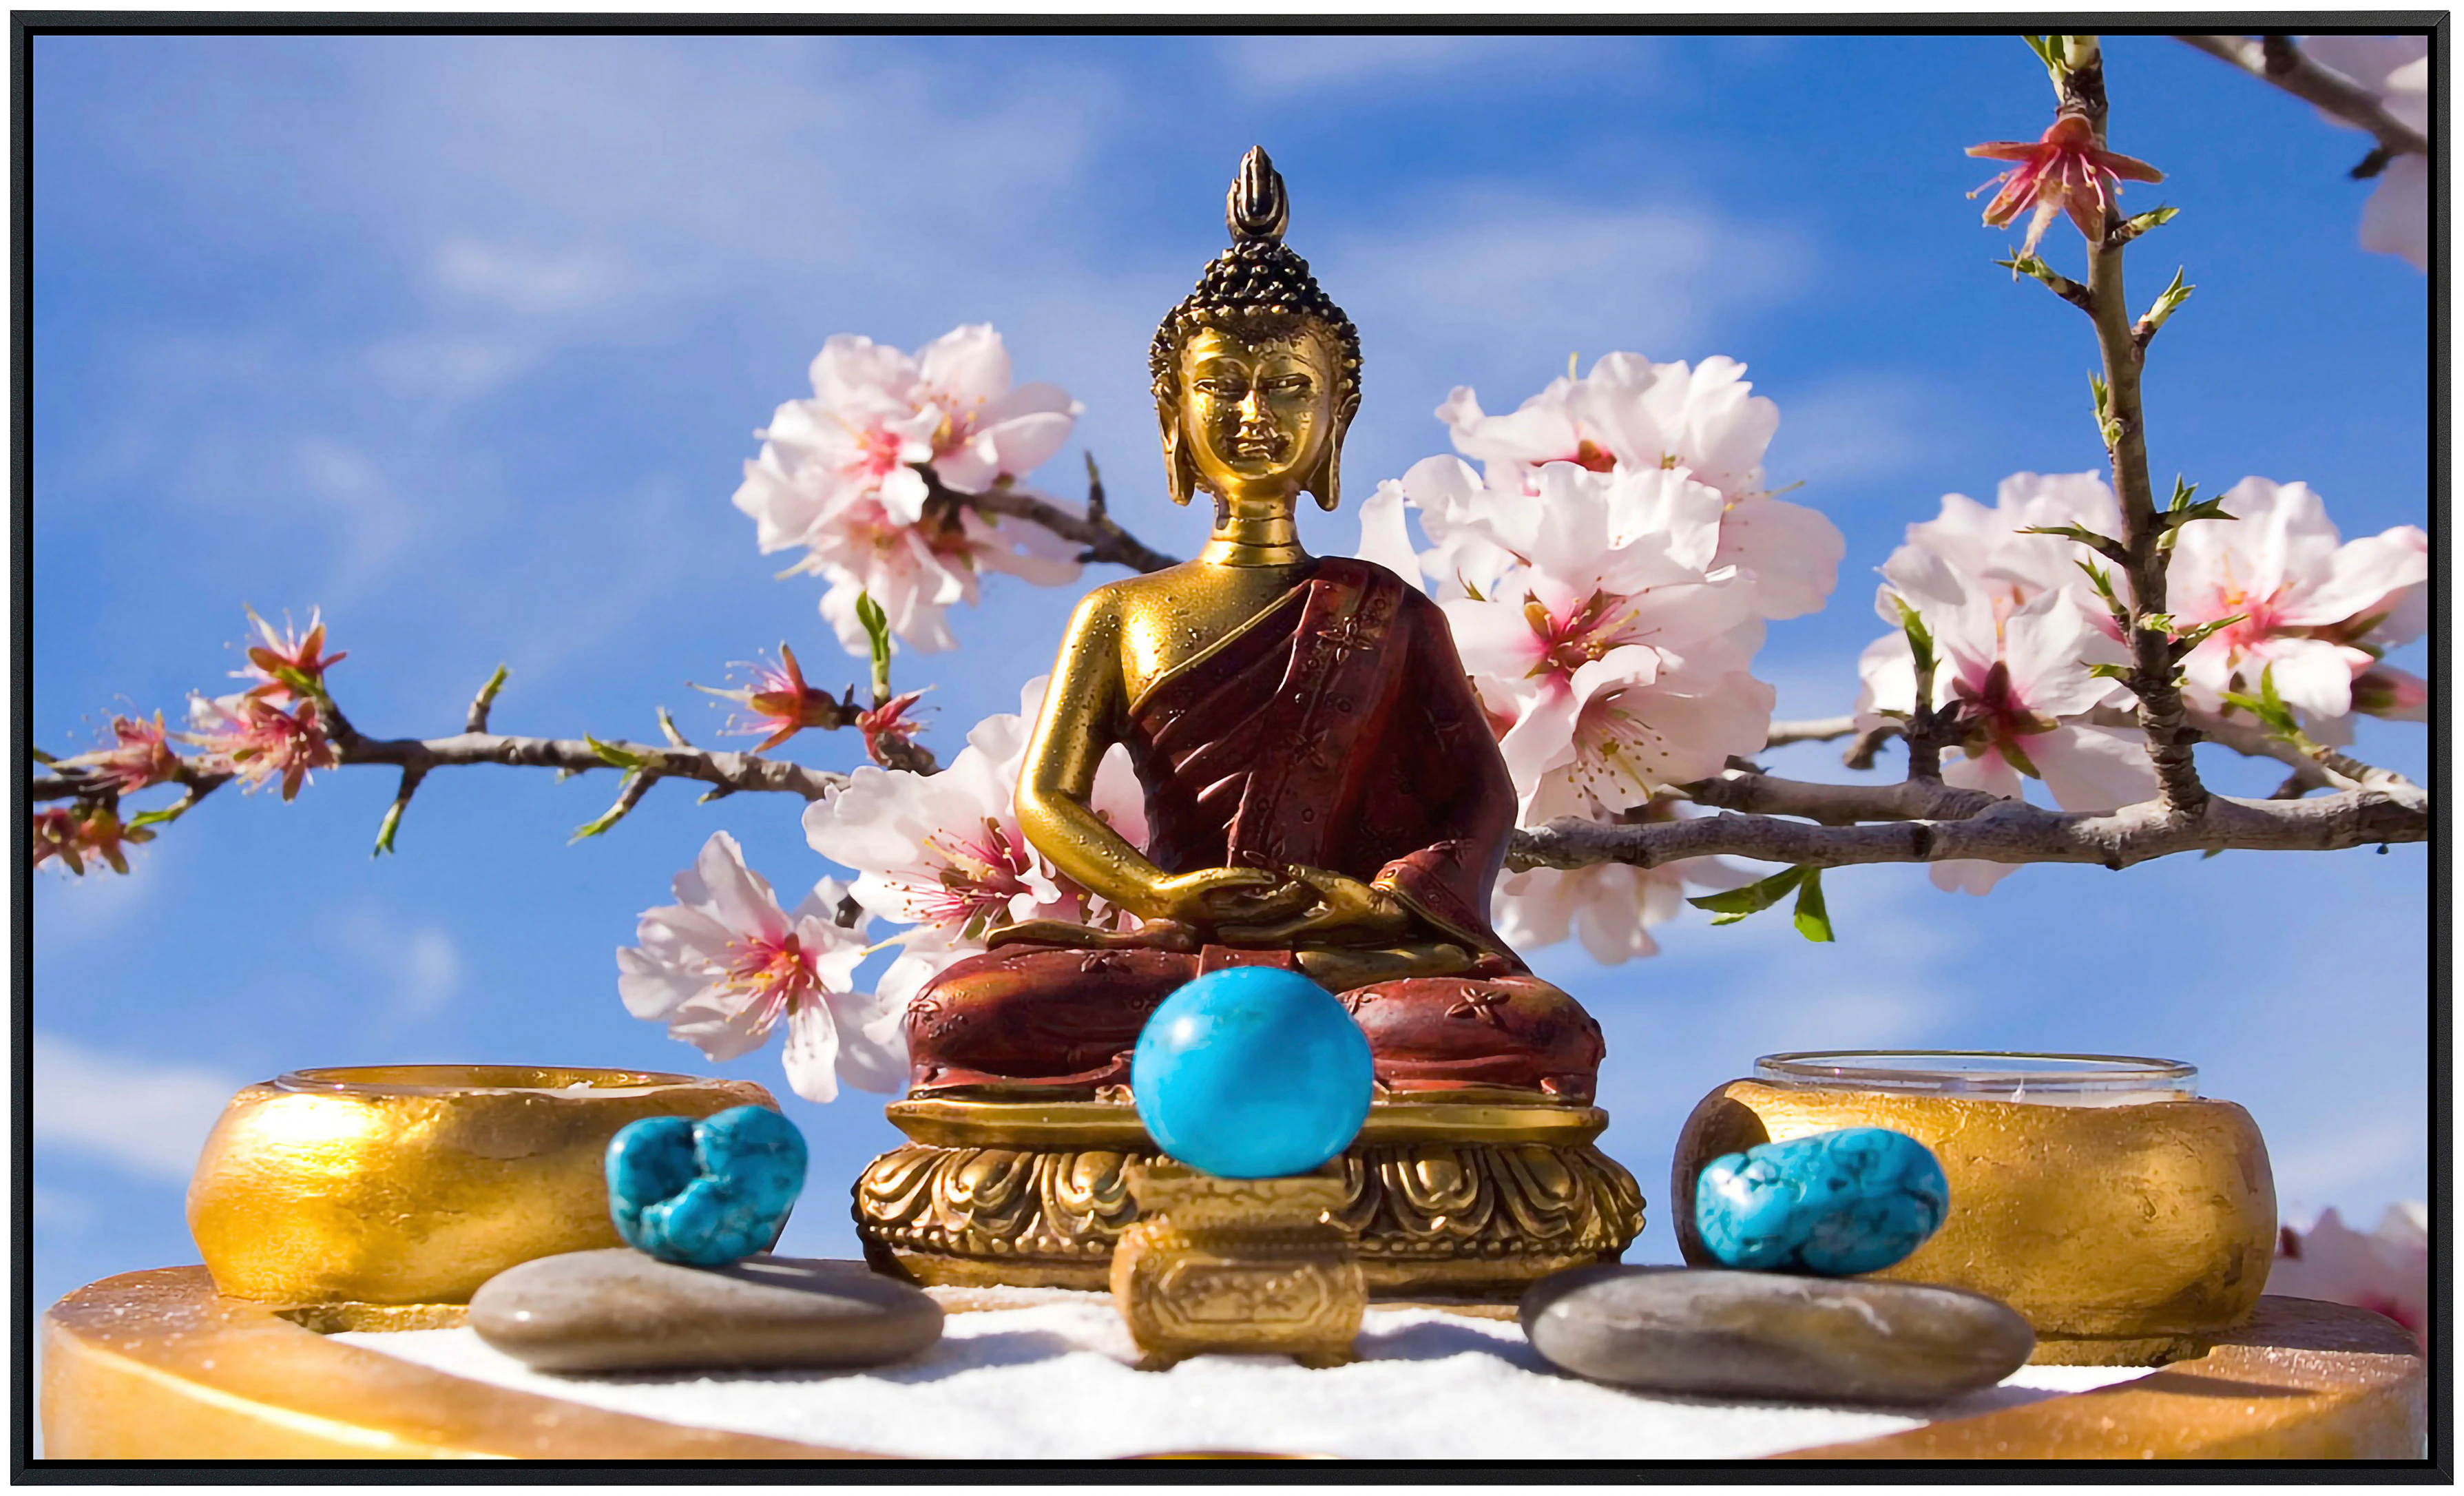 Papermoon Infrarotheizung »Buddah Figur«, sehr angenehme Strahlungswärme günstig online kaufen